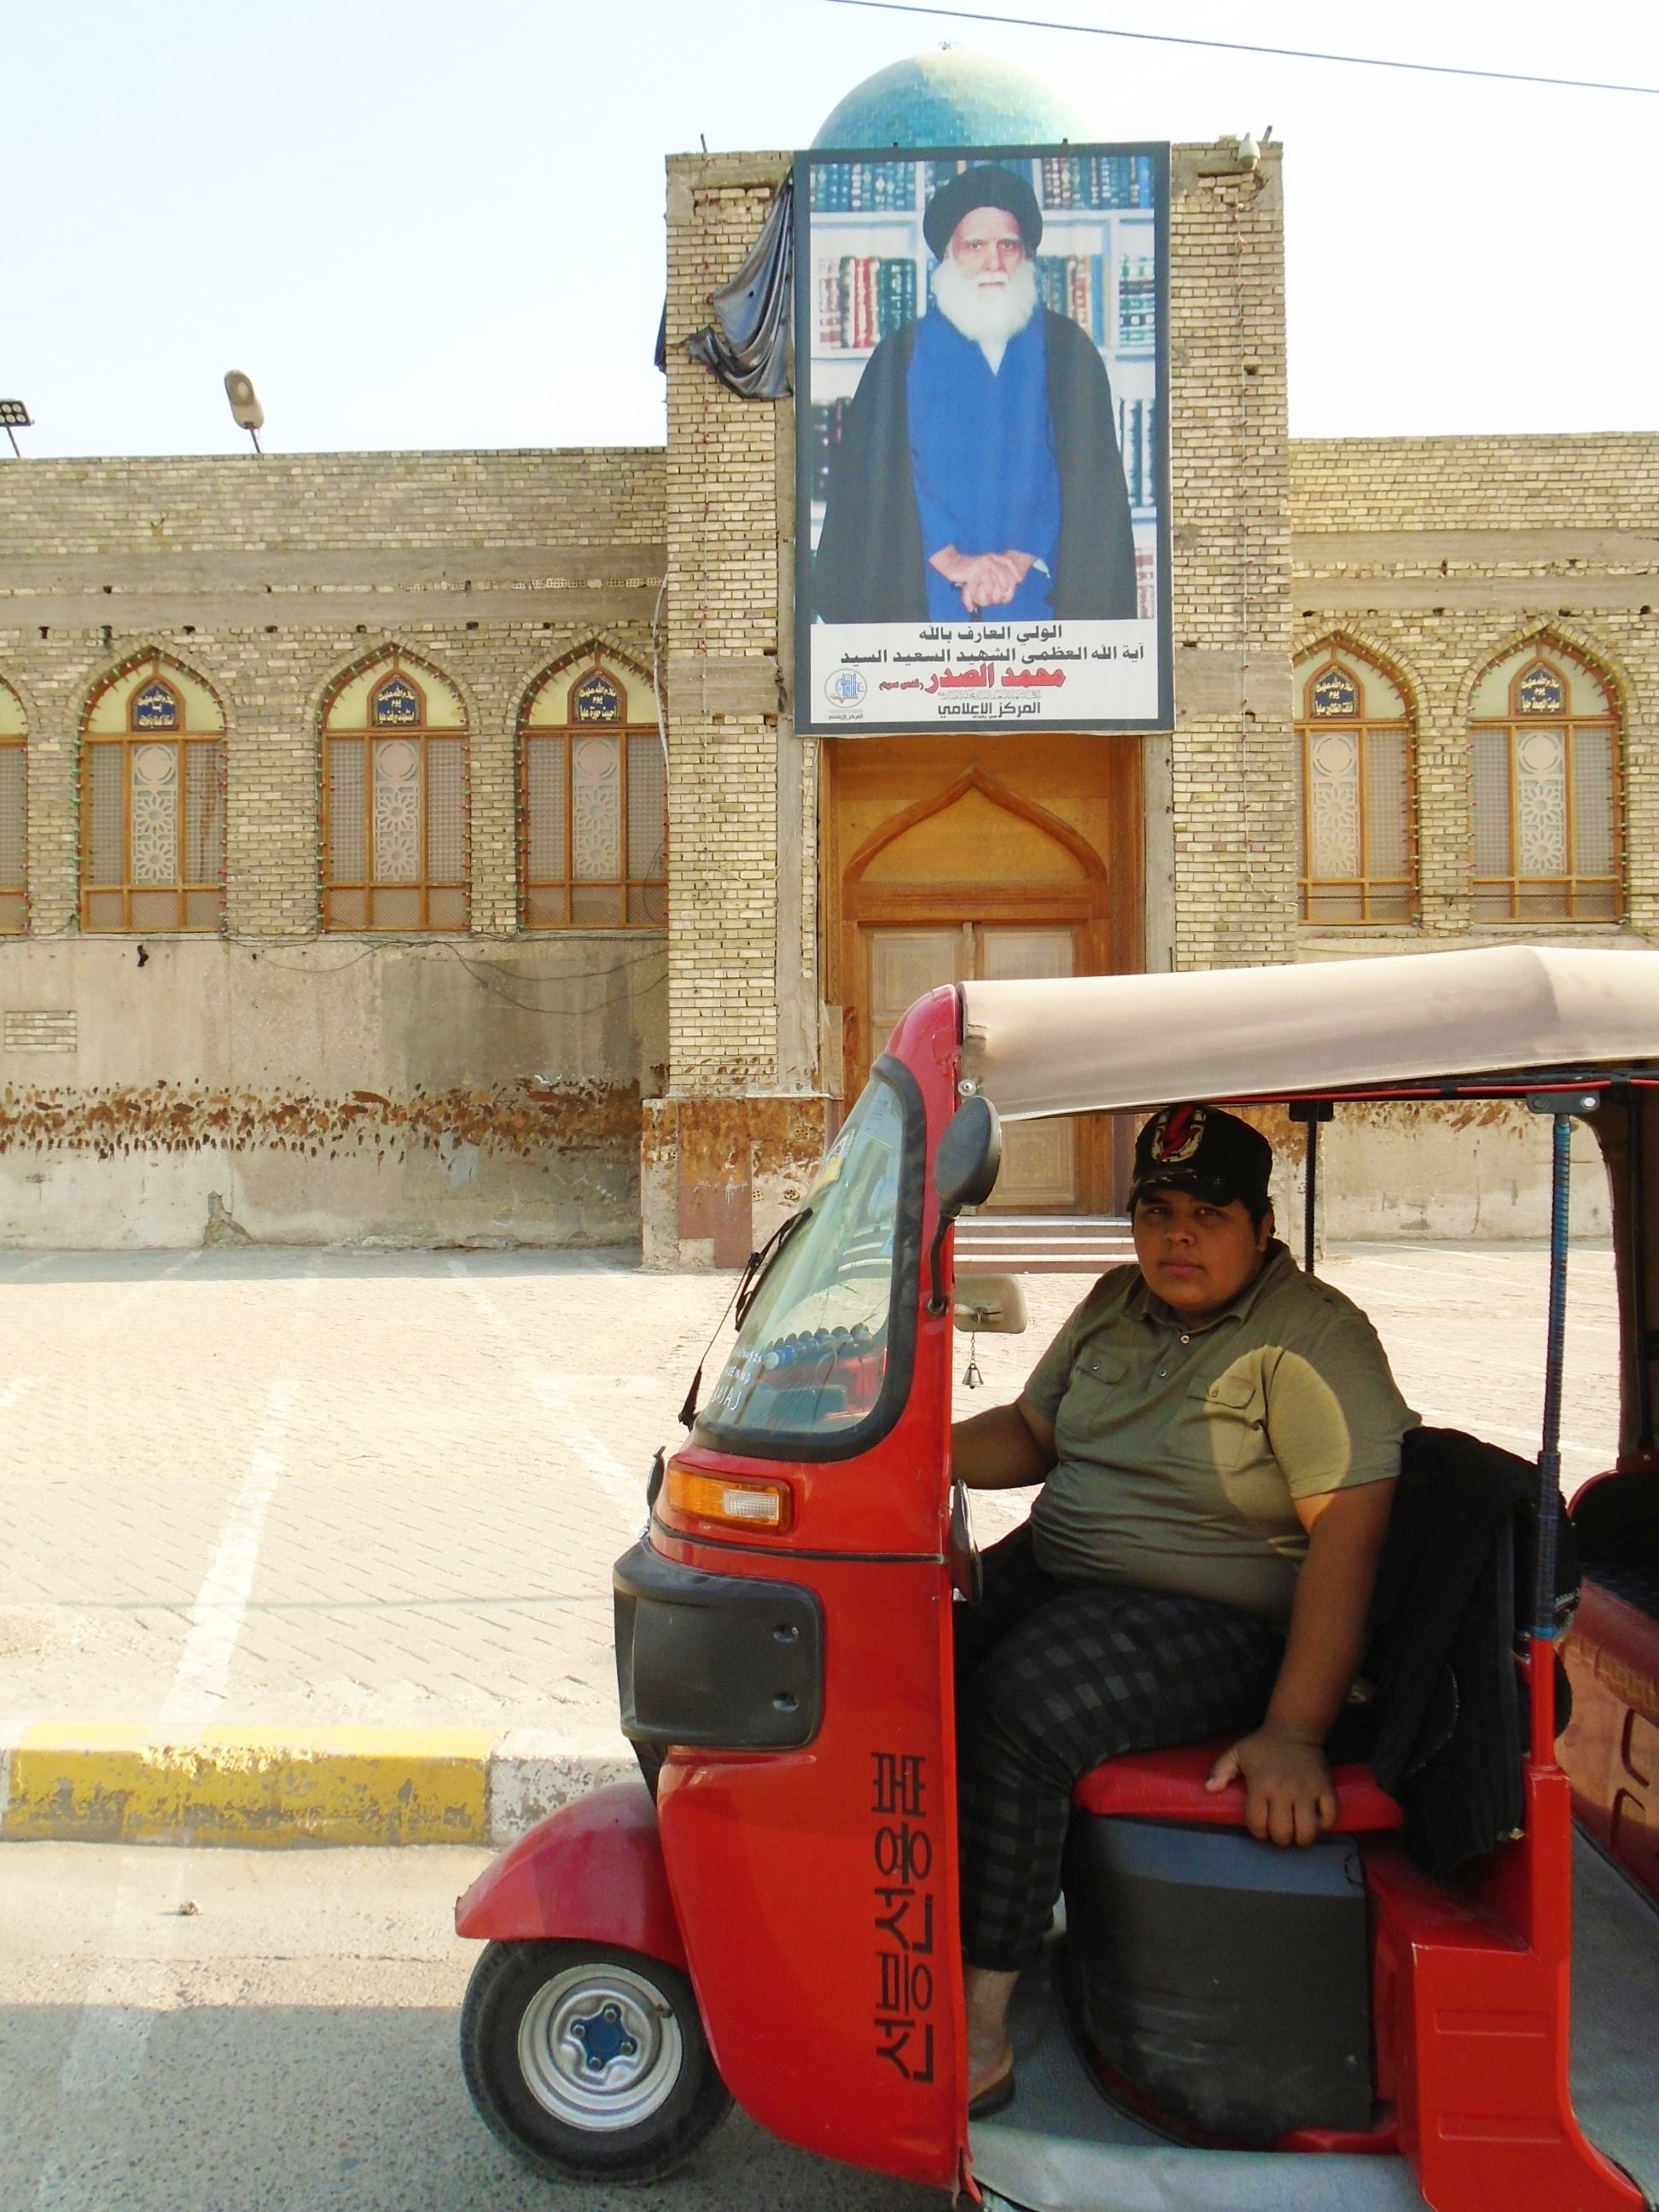 حسين يجلس بثقة في توك توك ذي لون أحمر ناري بغداد - العراق. Foto: Birgit Svensson